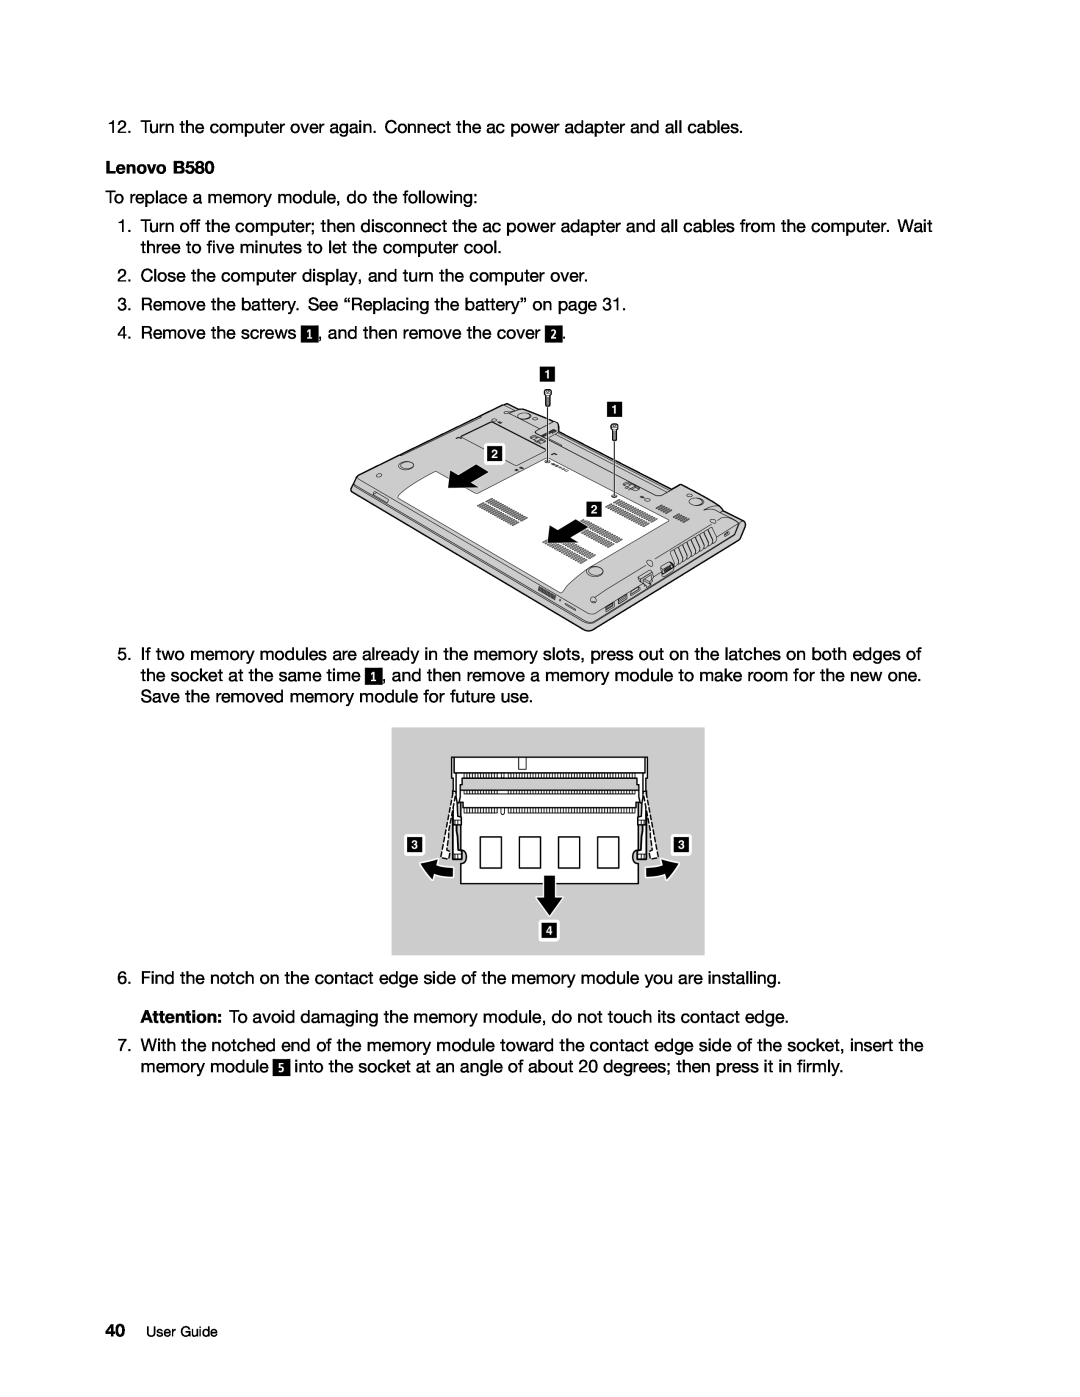 Lenovo B480 manual Lenovo B580, User Guide 